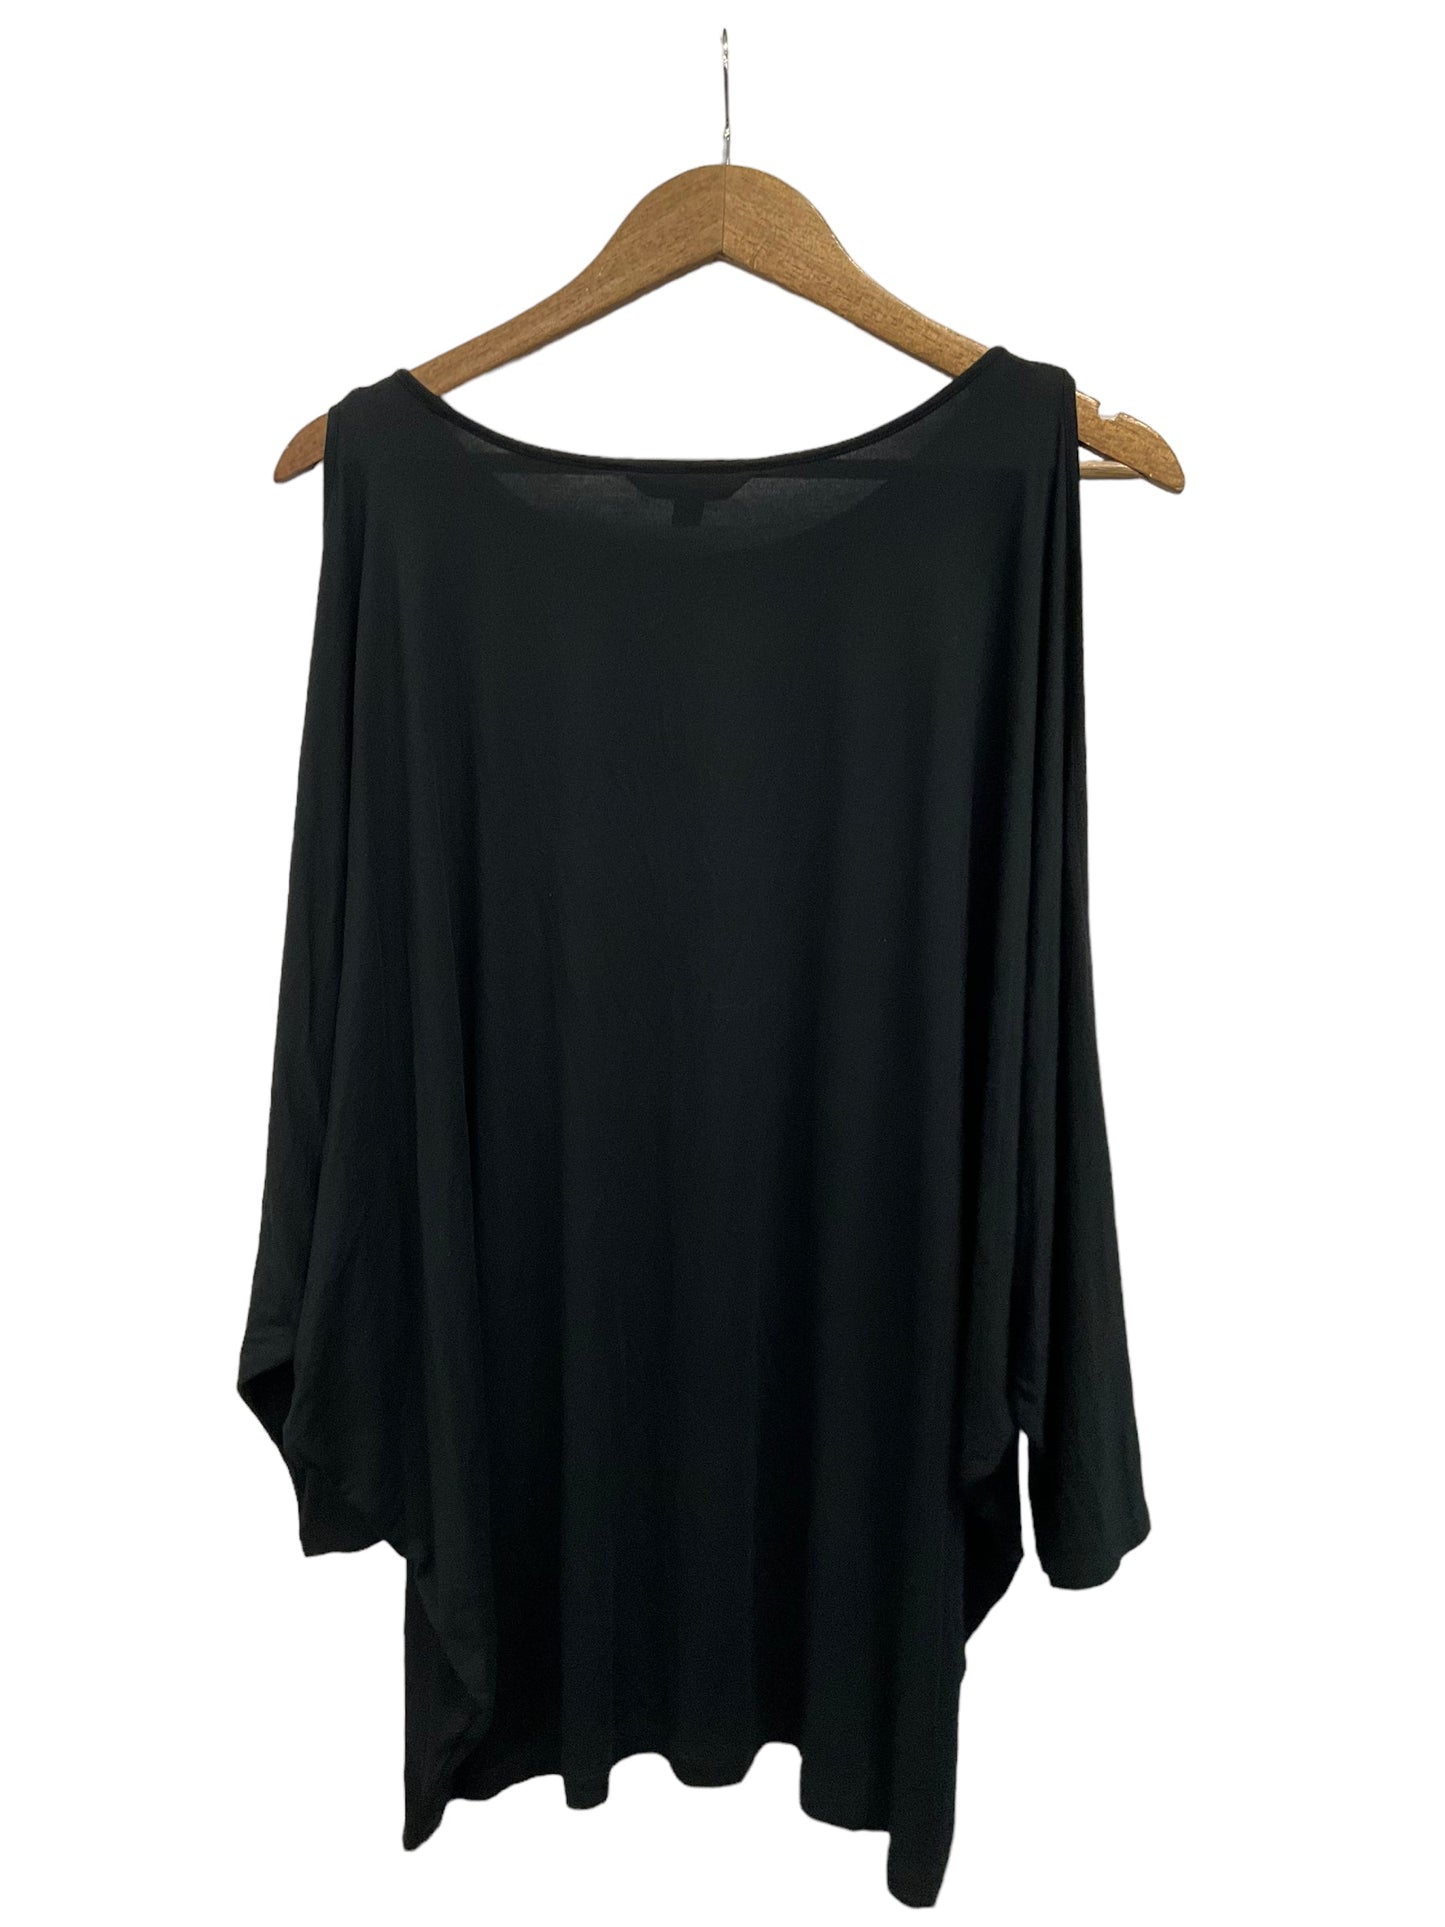 Top Long Sleeve By Lauren By Ralph Lauren  Size: 3x